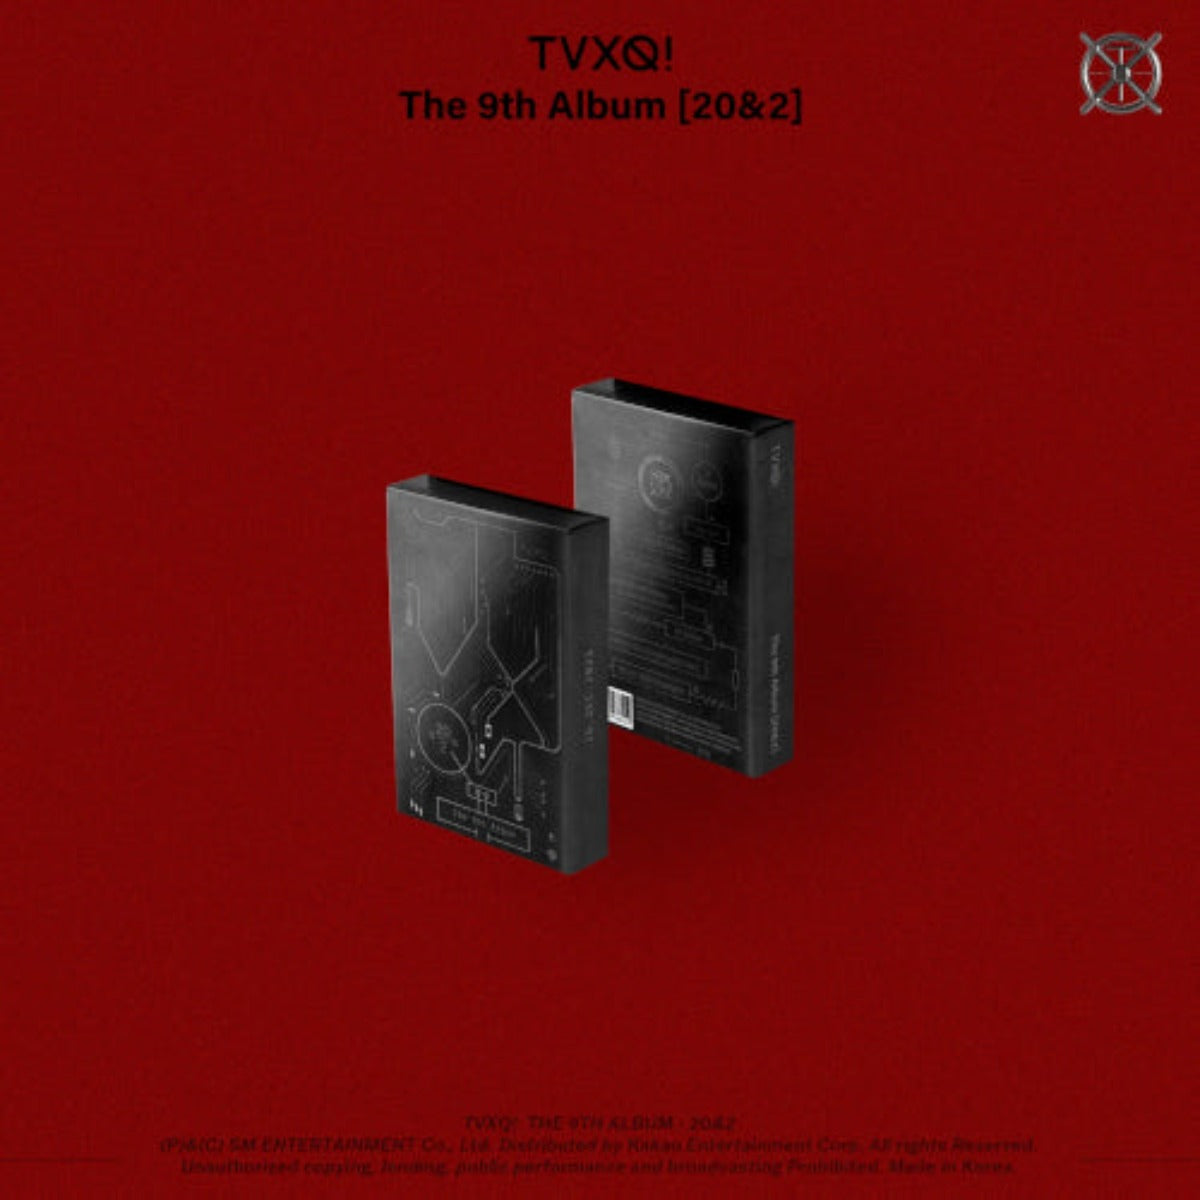 TVXQ - 20&2 9TH FULL ALBUM CIRCUIT VERSION